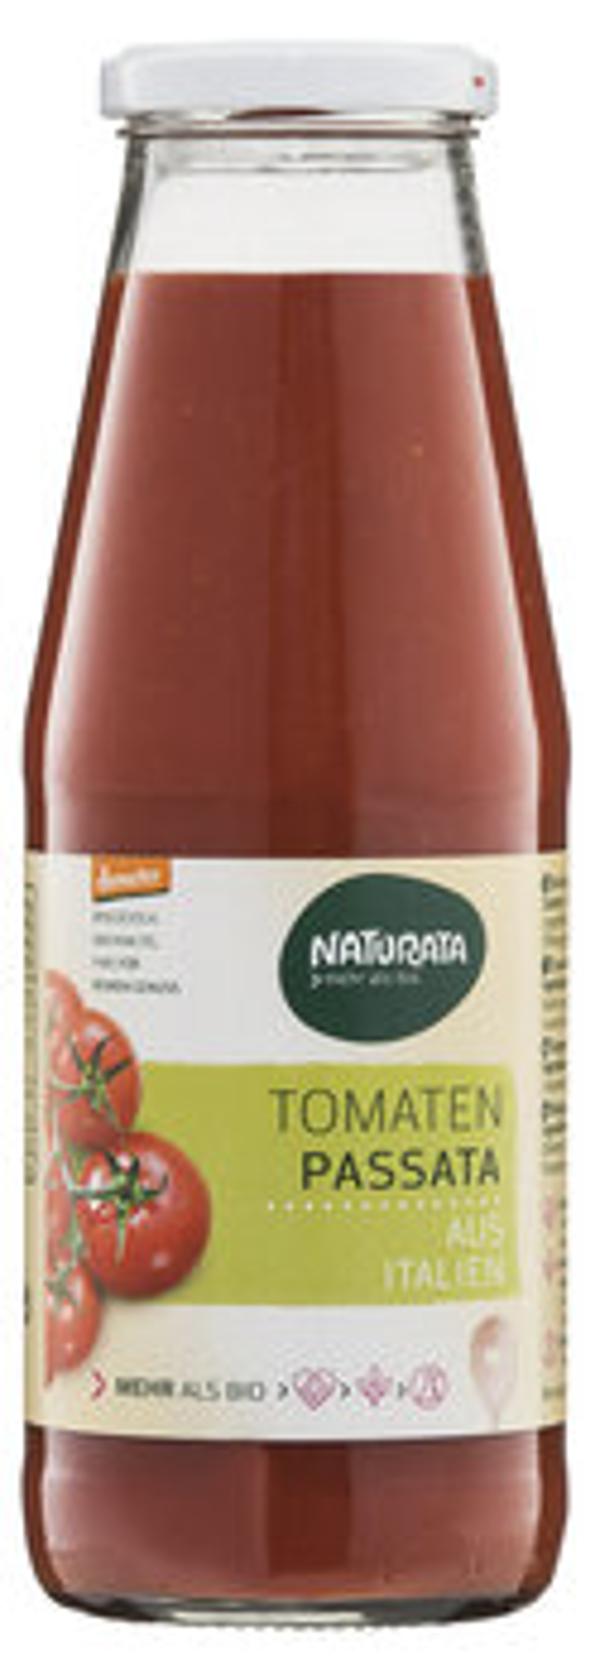 Produktfoto zu Tomaten Passata